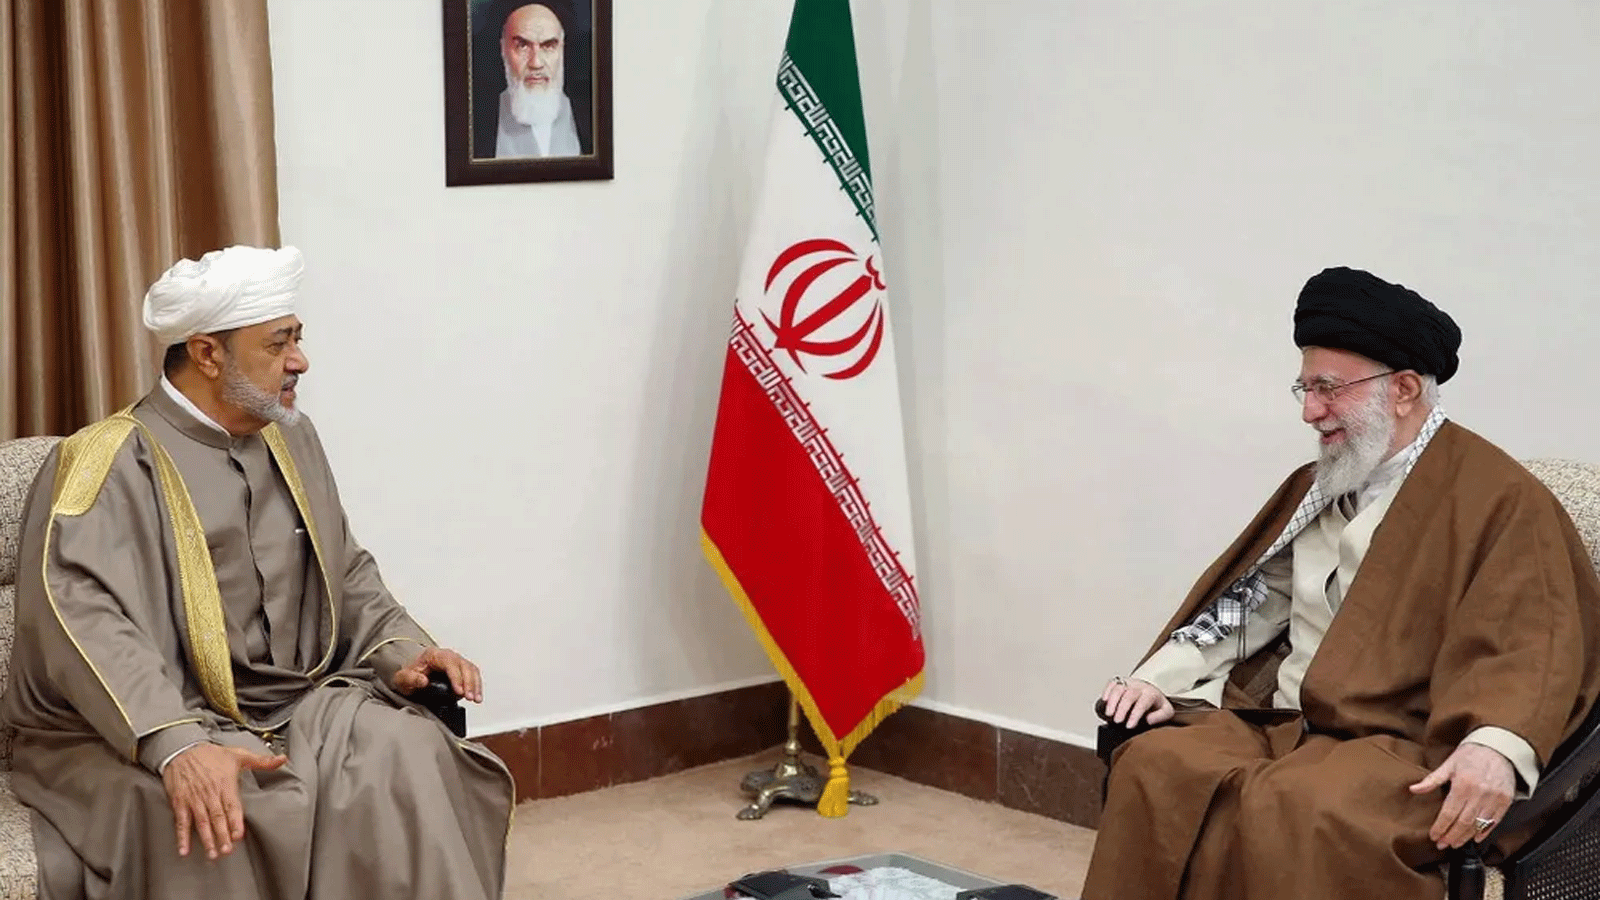 المرشد الأعلى الإيراني آية الله علي خامنئي (إلى اليمين) خلال لقاء مع السلطان العماني هيثم بن طارق آل سعيد في طهران عاصمة إيران